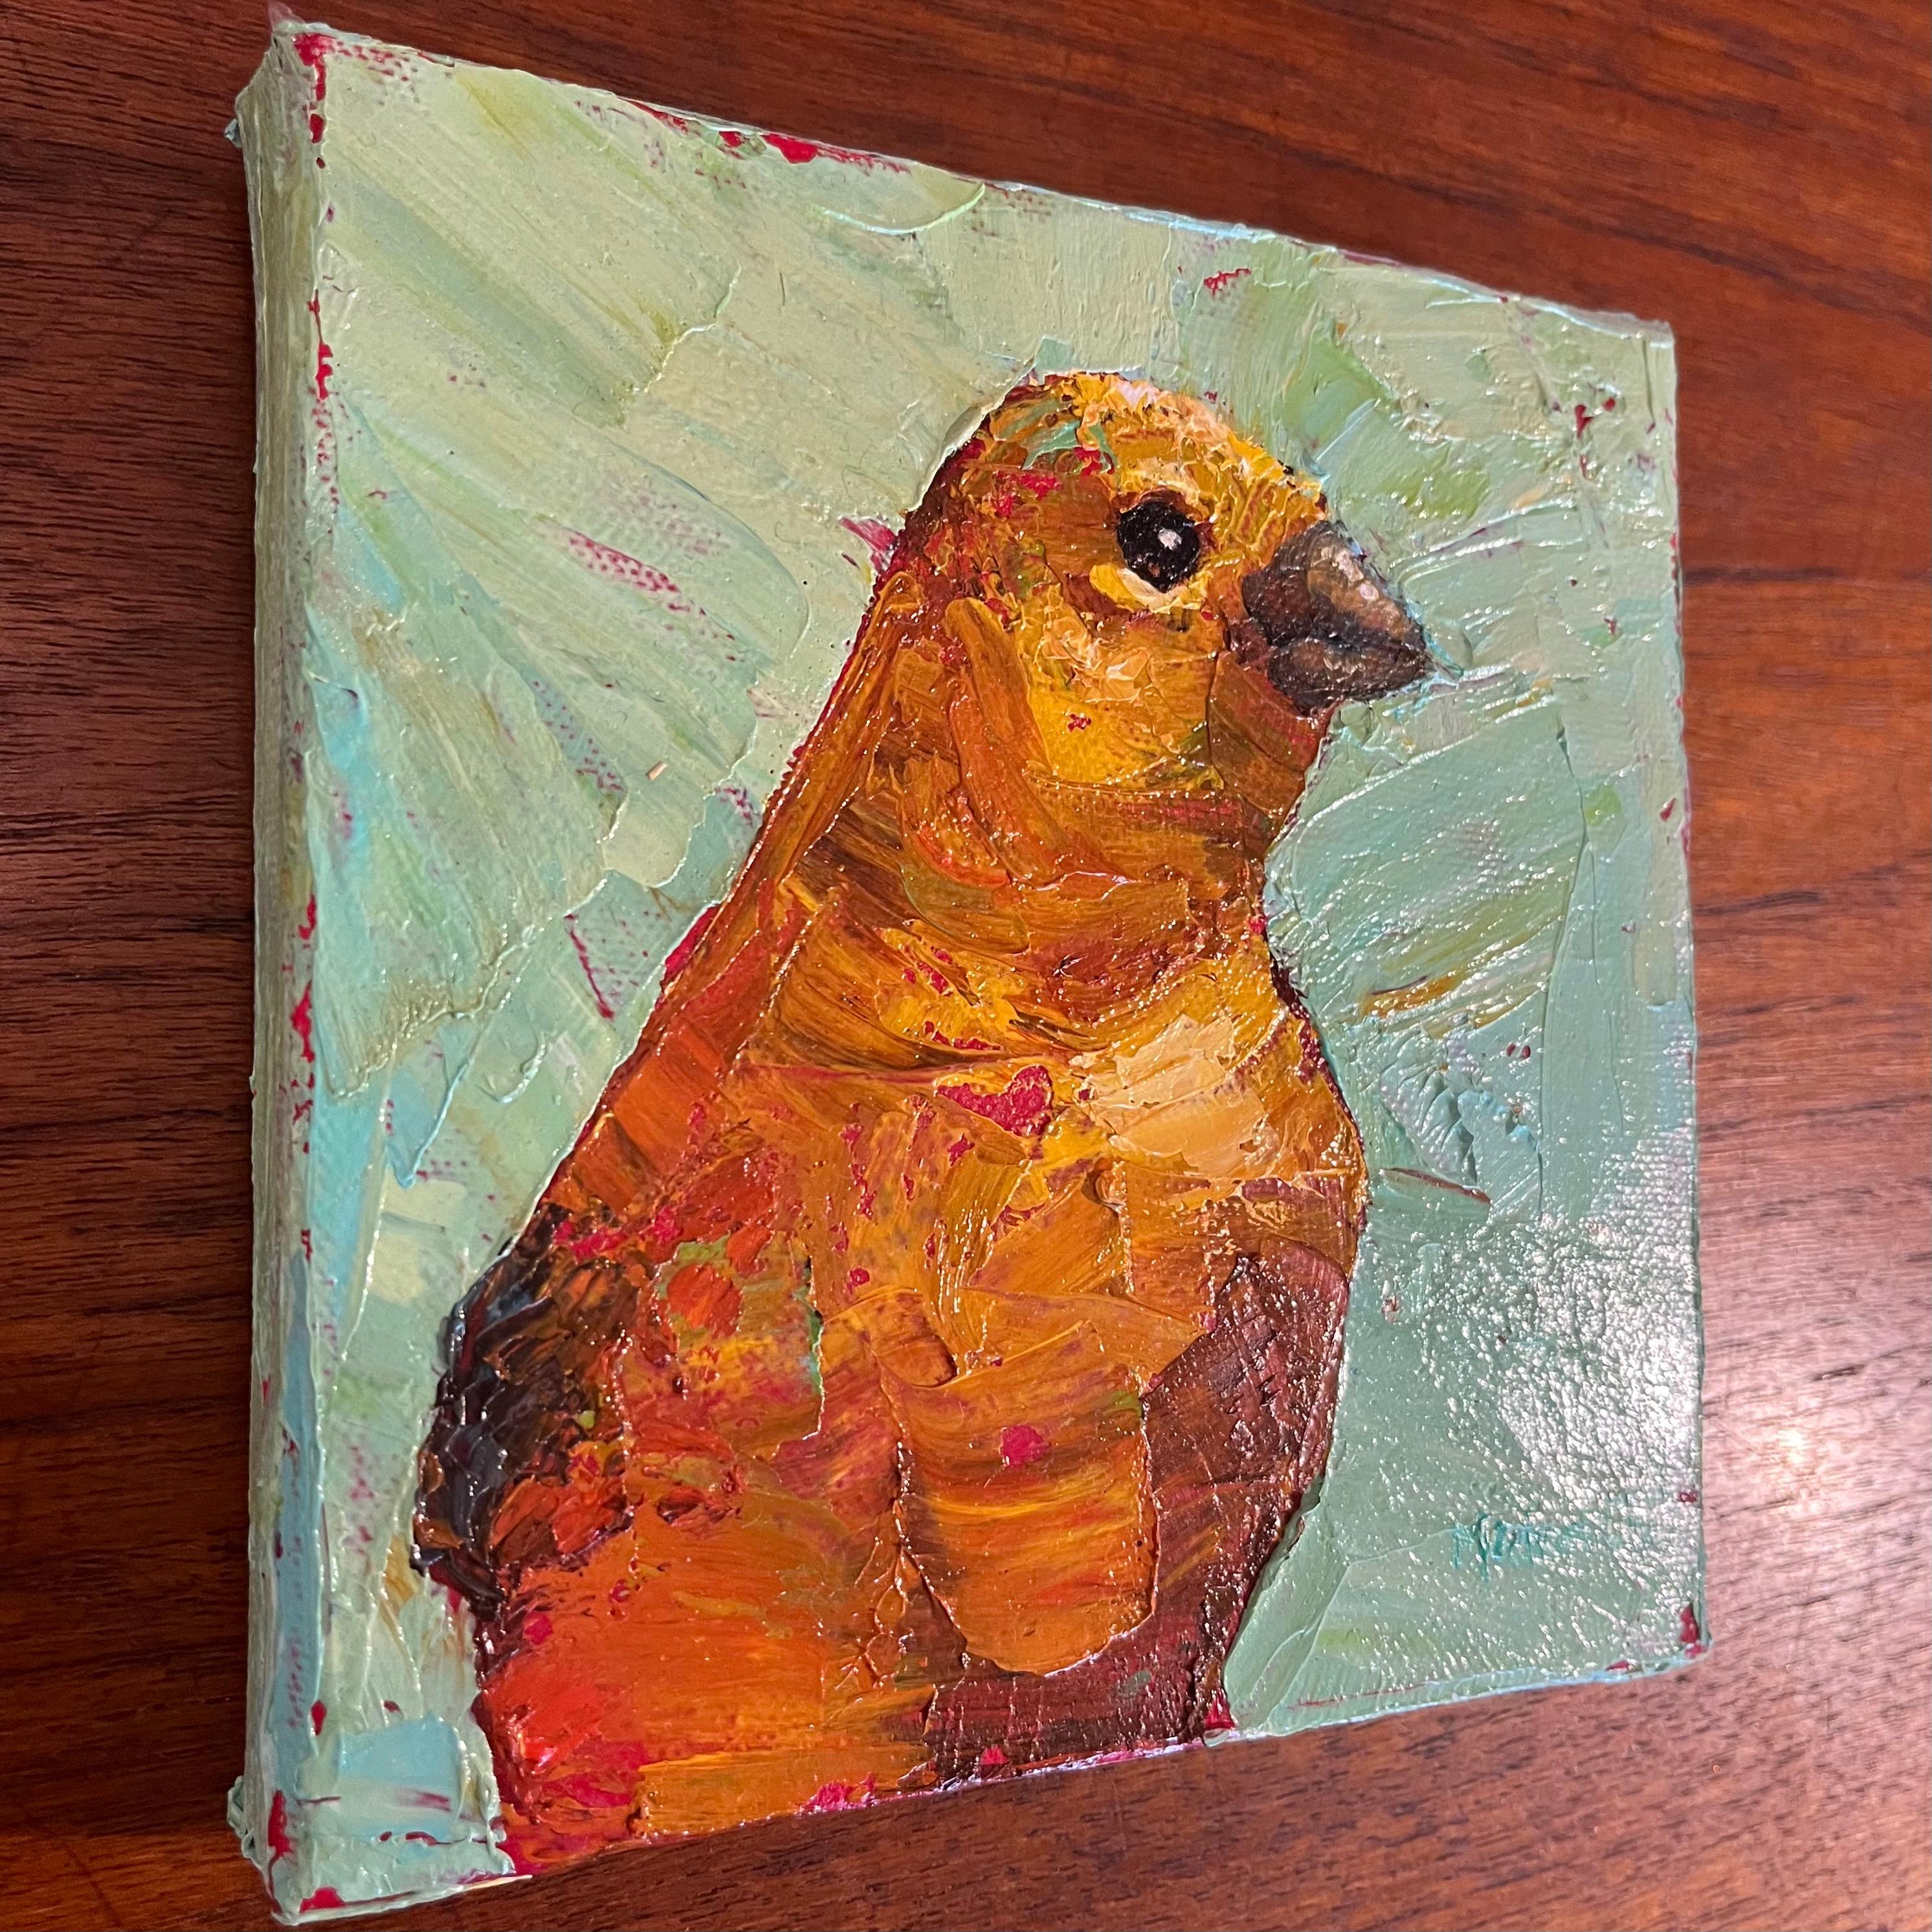 Peinture à l'huile en empâtement d'un oiseau jaune sur un fond vert.

L'œuvre de Michael-Che Swisher est inspirée par son amour des animaux. Enfant, elle ramenait à la maison tous les écureuils, lapins et oiseaux blessés. À l'âge adulte, elle est